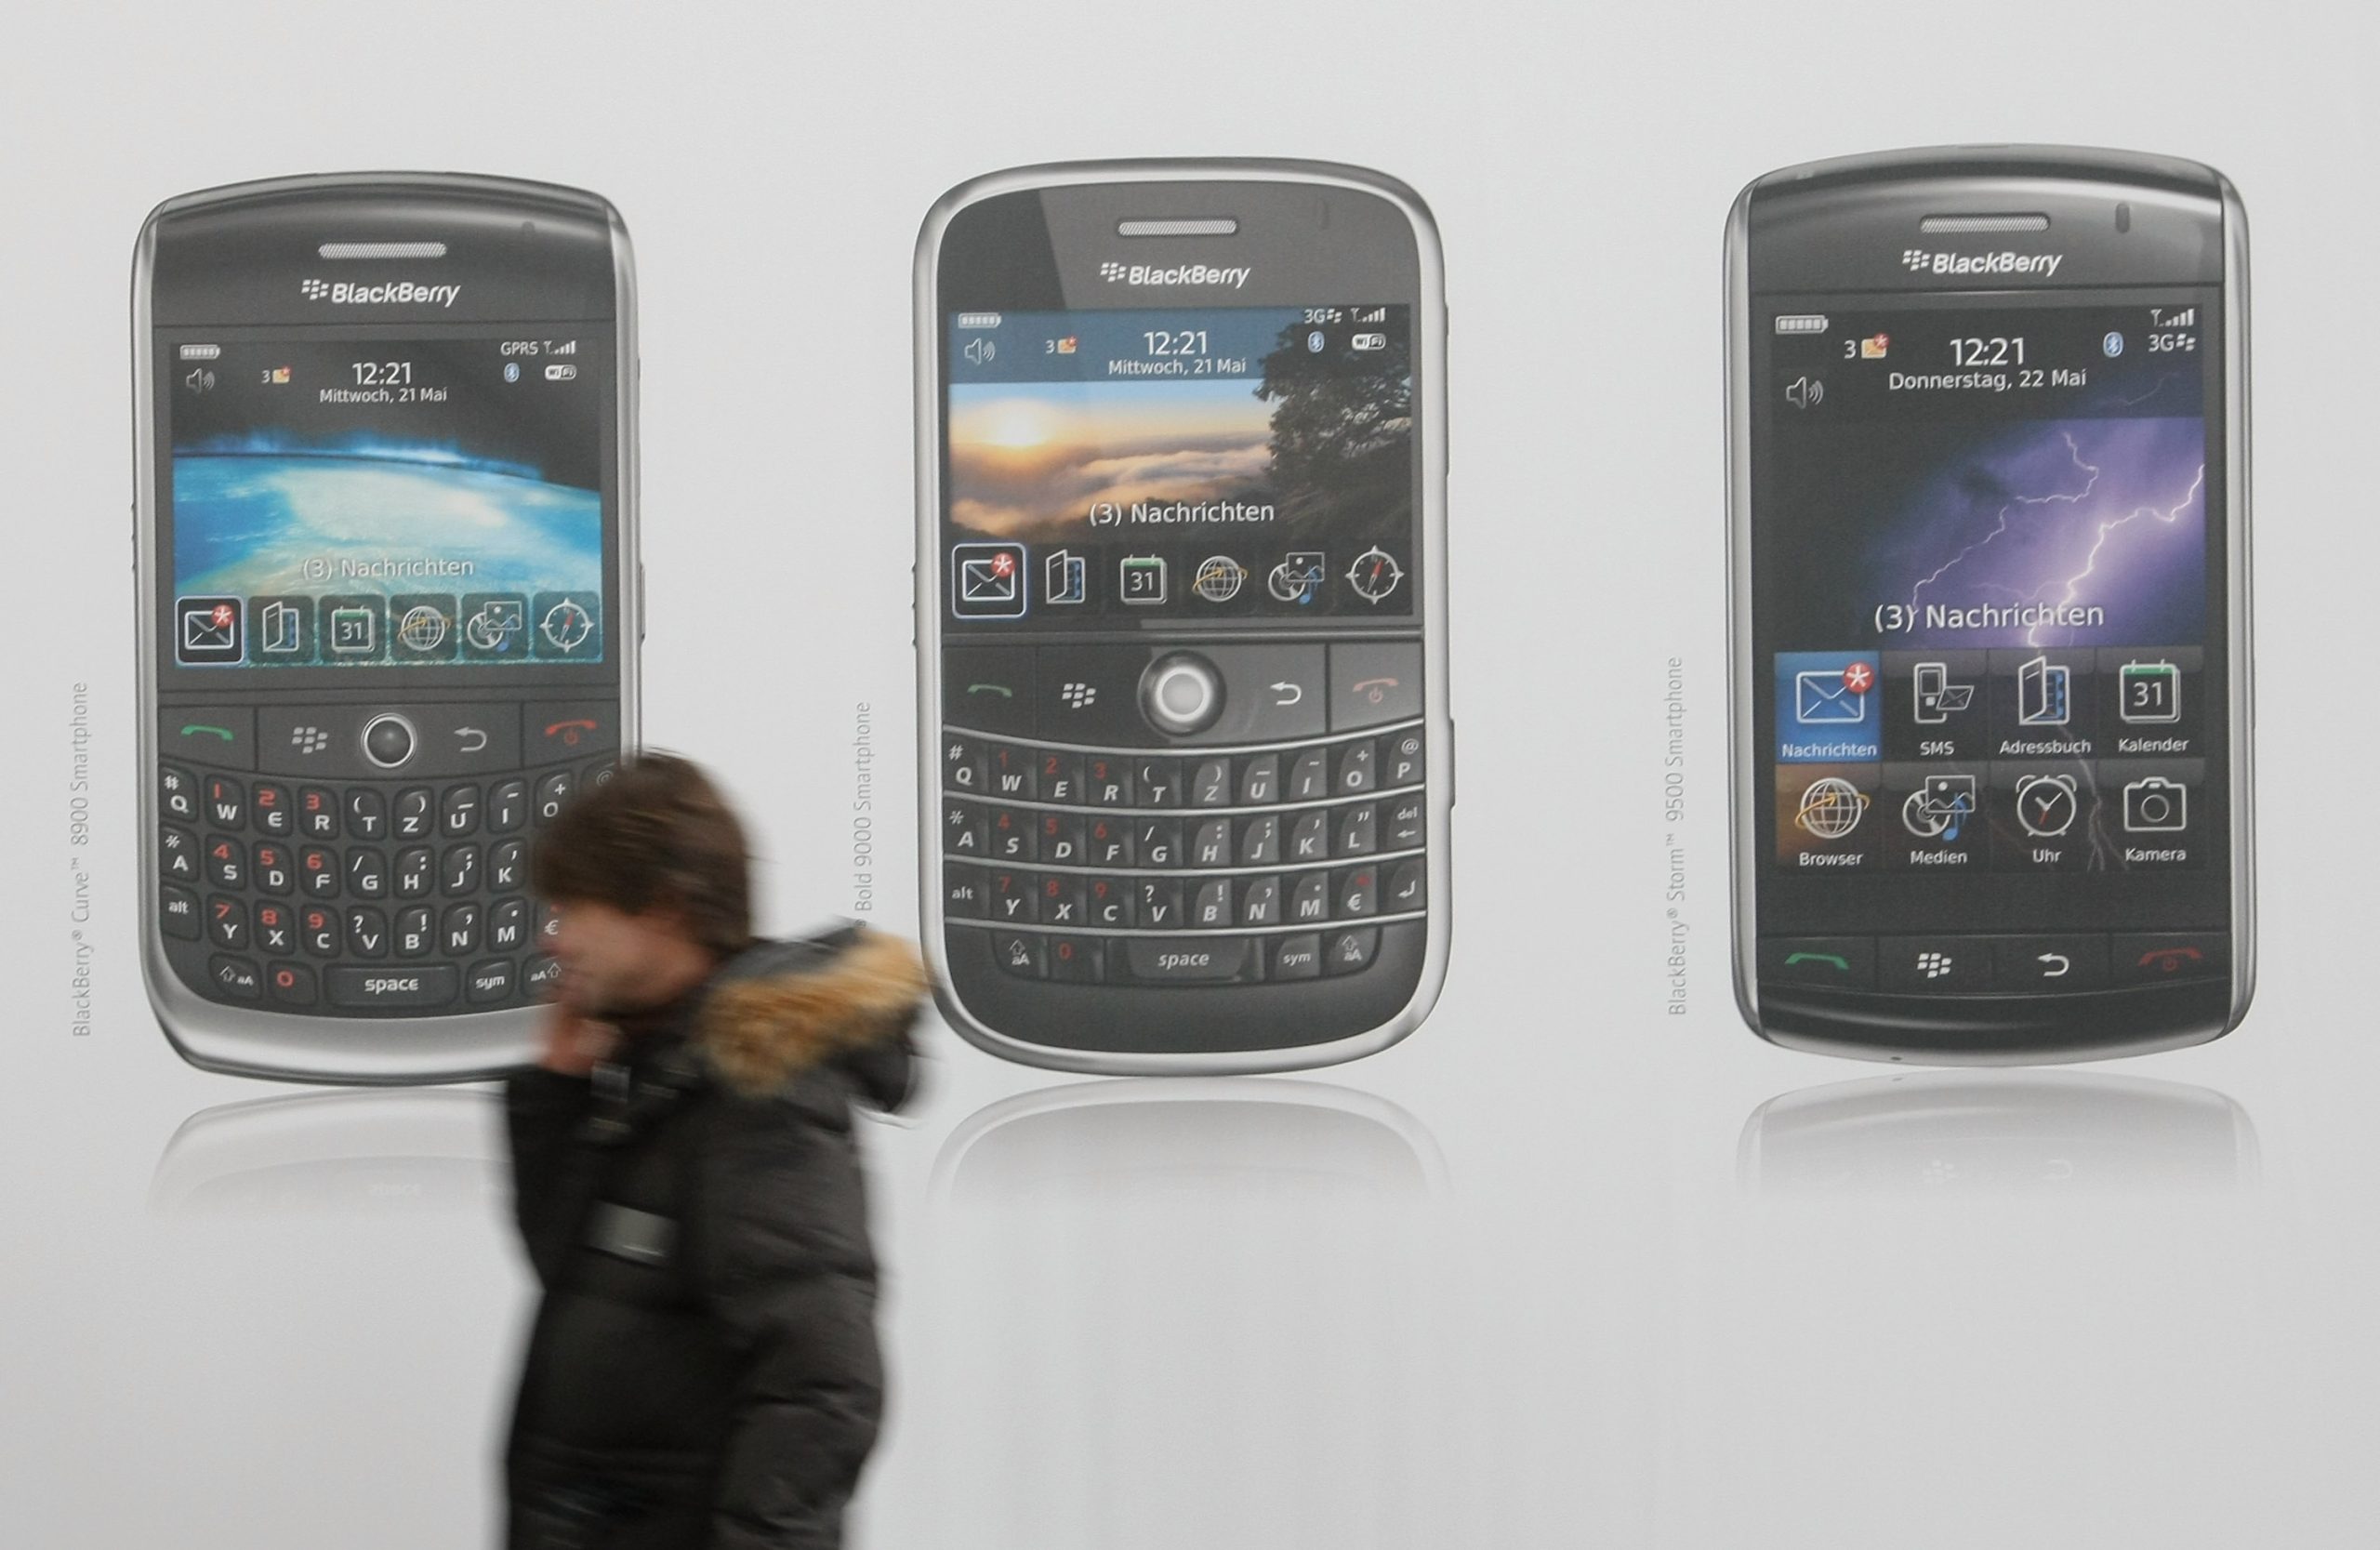 Adiós, vaquero: Blackberry se despide para dar paso a una nueva era